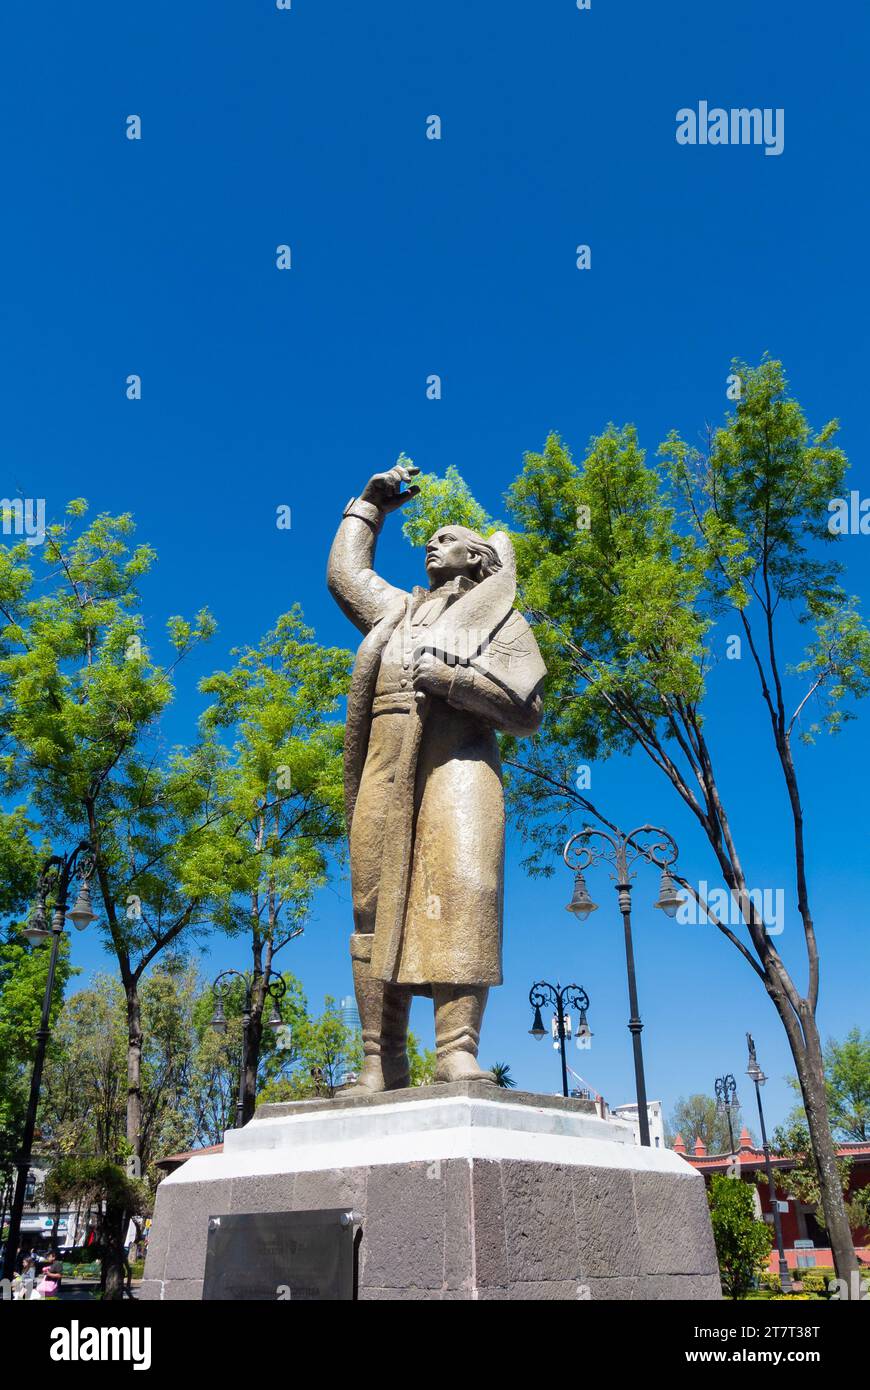 Mexico City, CDMX, Mexico, A statue of Miguel Hidalgo y Costilla at plaza jardin Hidalgo. Editorial only. Stock Photo